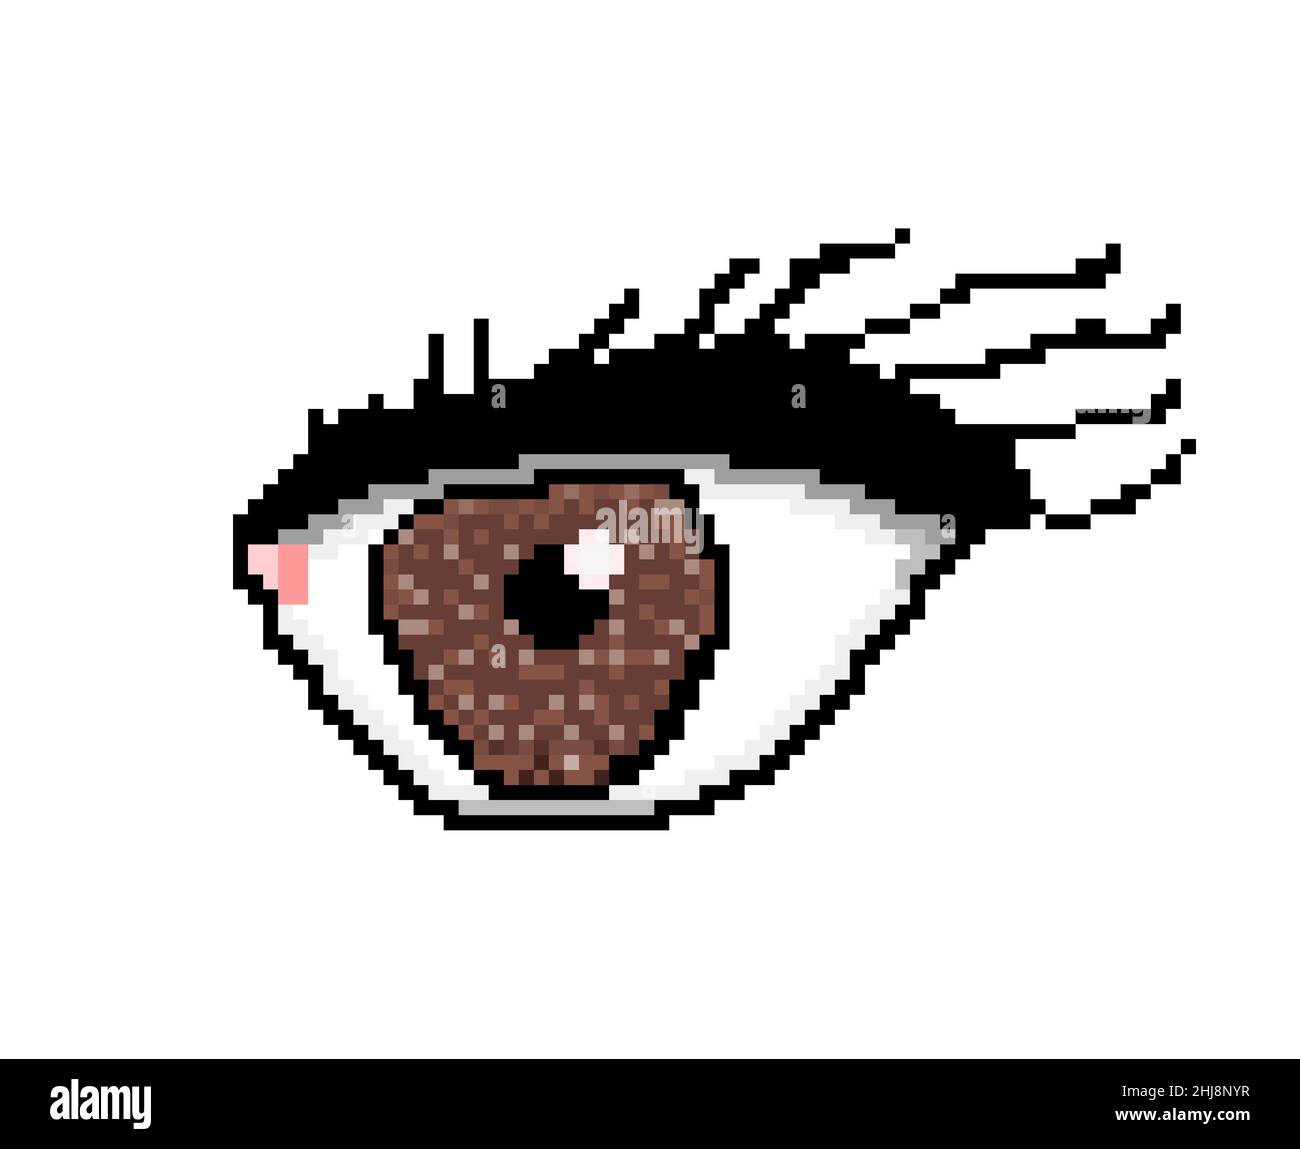 Pixelkunst: Ein großes riesiges weibliches Auge, mit Wimpern und Make-up, braune Pupille. Stockfoto